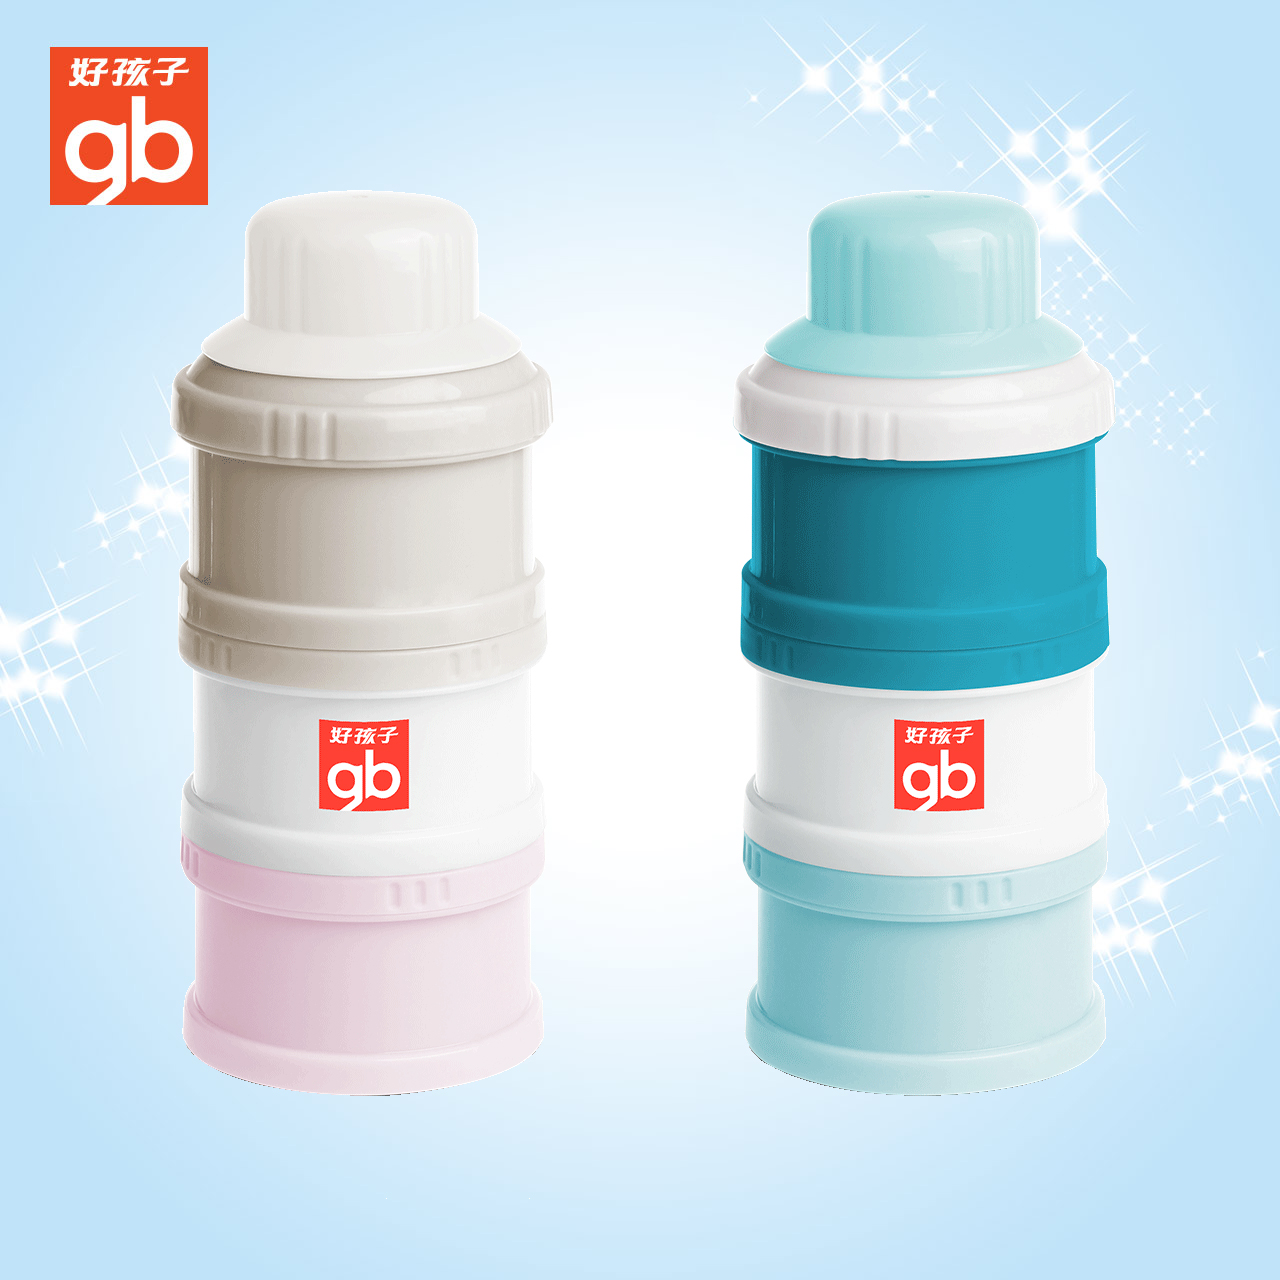 新品好孩子三层奶粉罐PP安全材质便携防潮奶粉盒大容量奶粉格特惠